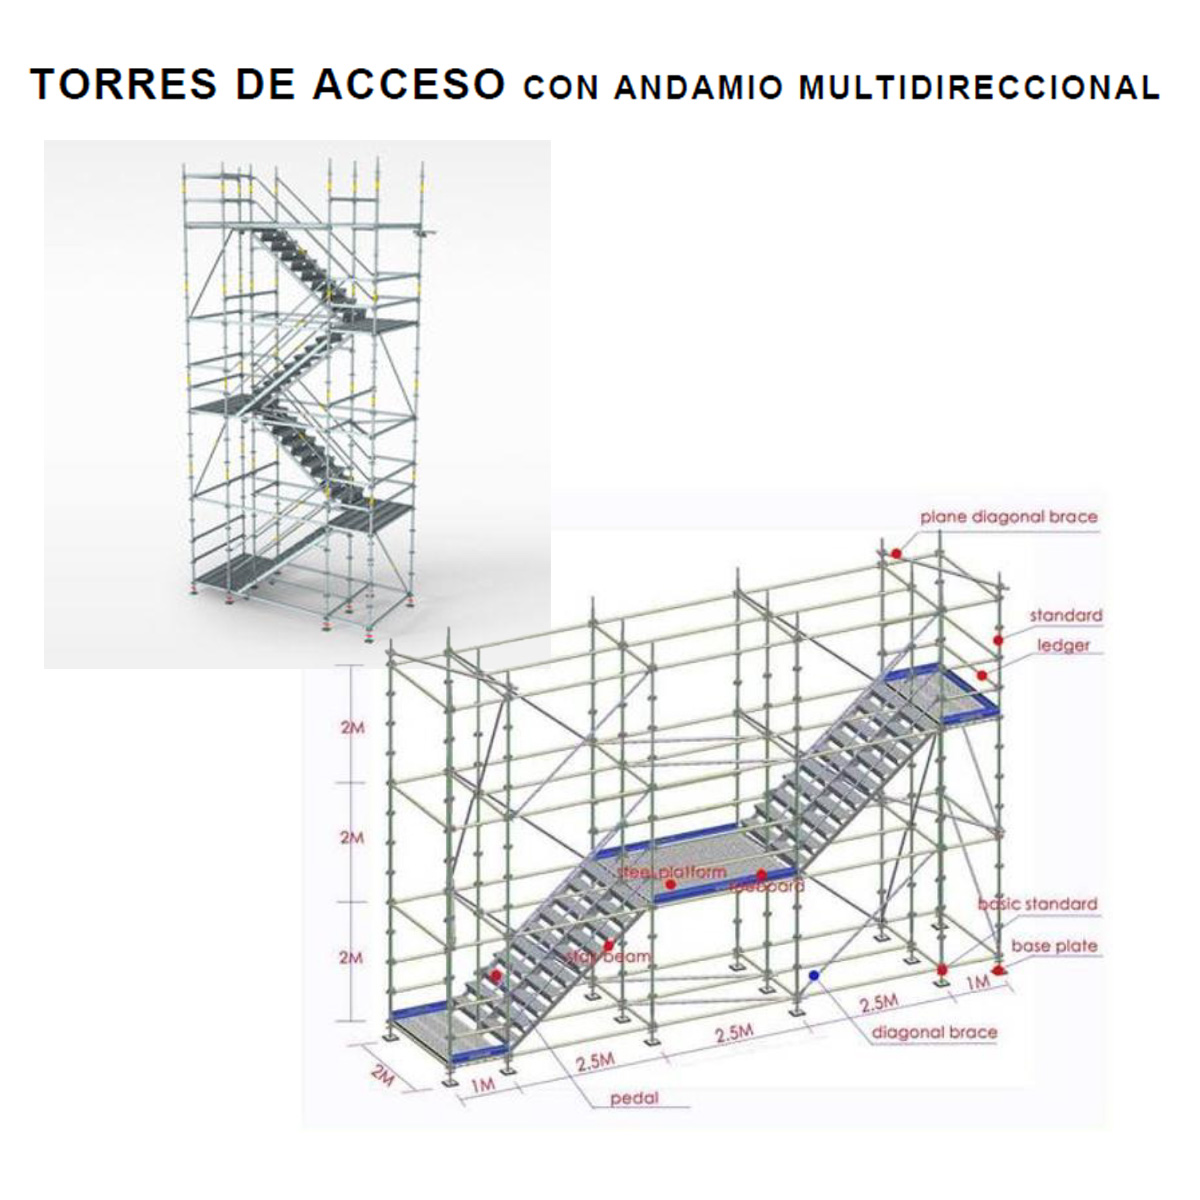 Torres de acceso, alquiler, Arreconsa, El Manual del Constructor, El Salvador